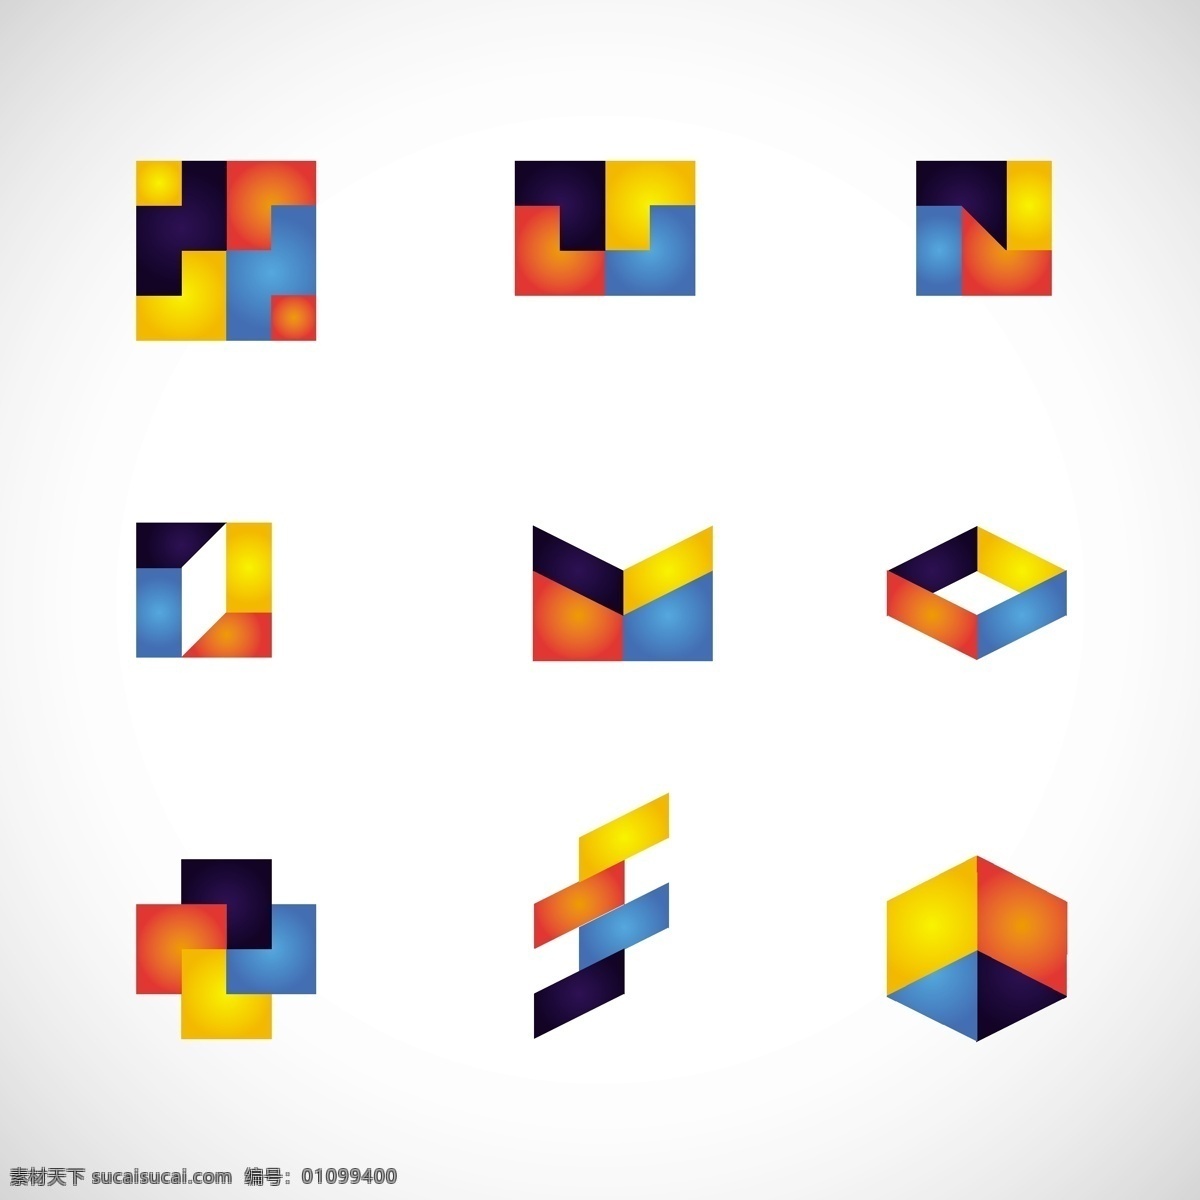 彩色 风格 集合 中 几何 标志 抽象 企业 色彩 公司 抽象的标志 企业形象 身份 公司标志 收藏